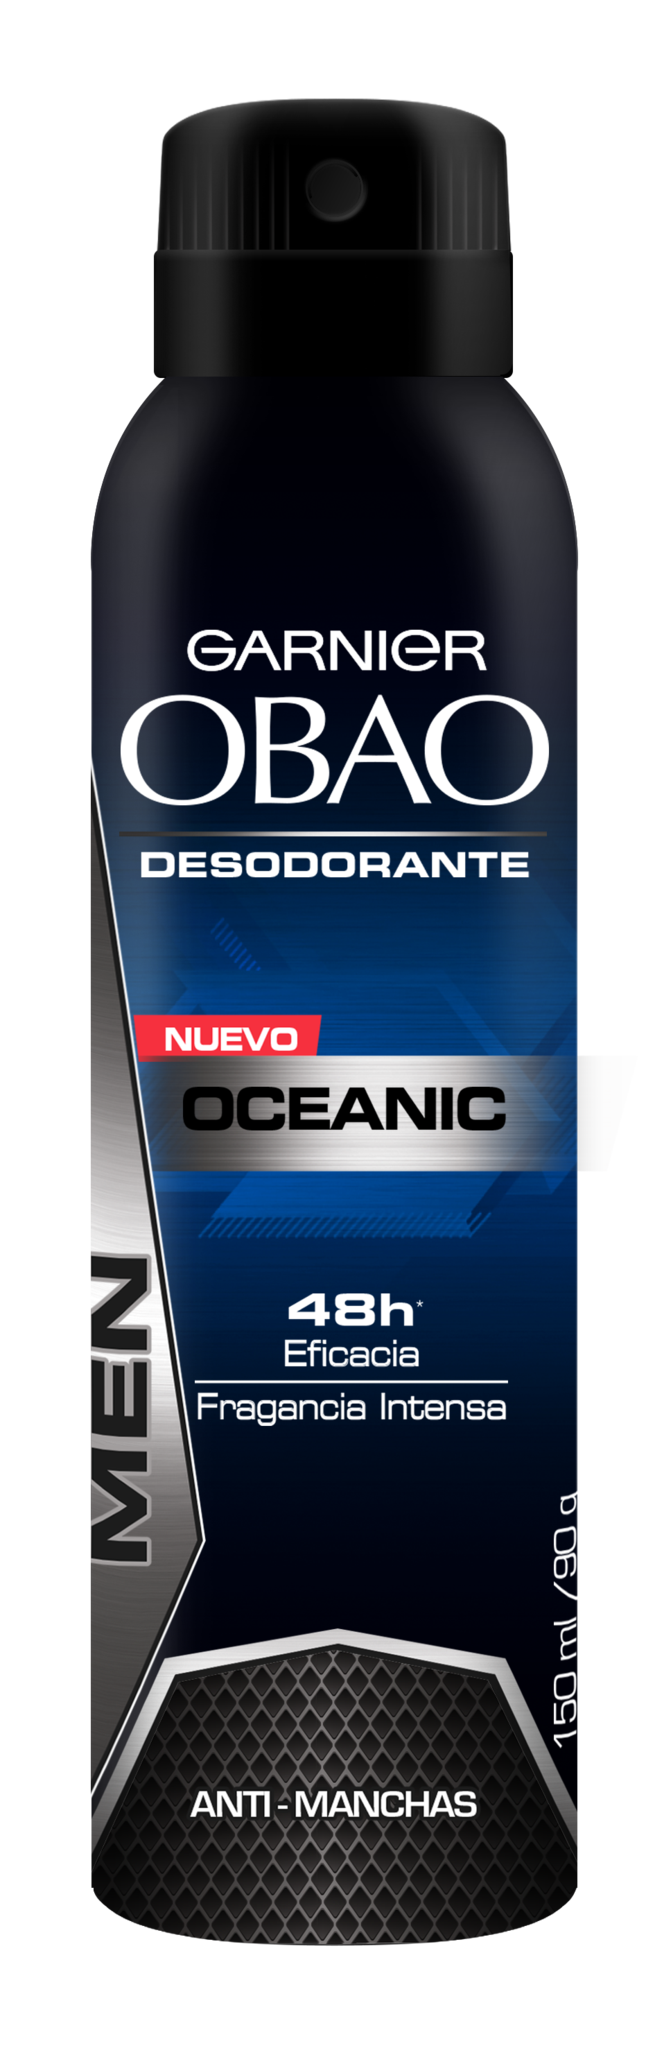 Media Caja Desodorante Obao Spray Hombre Oceanic de 150 ml con 6 piezas - Garnier-Desodorantes-Garnier-MayoreoTotal